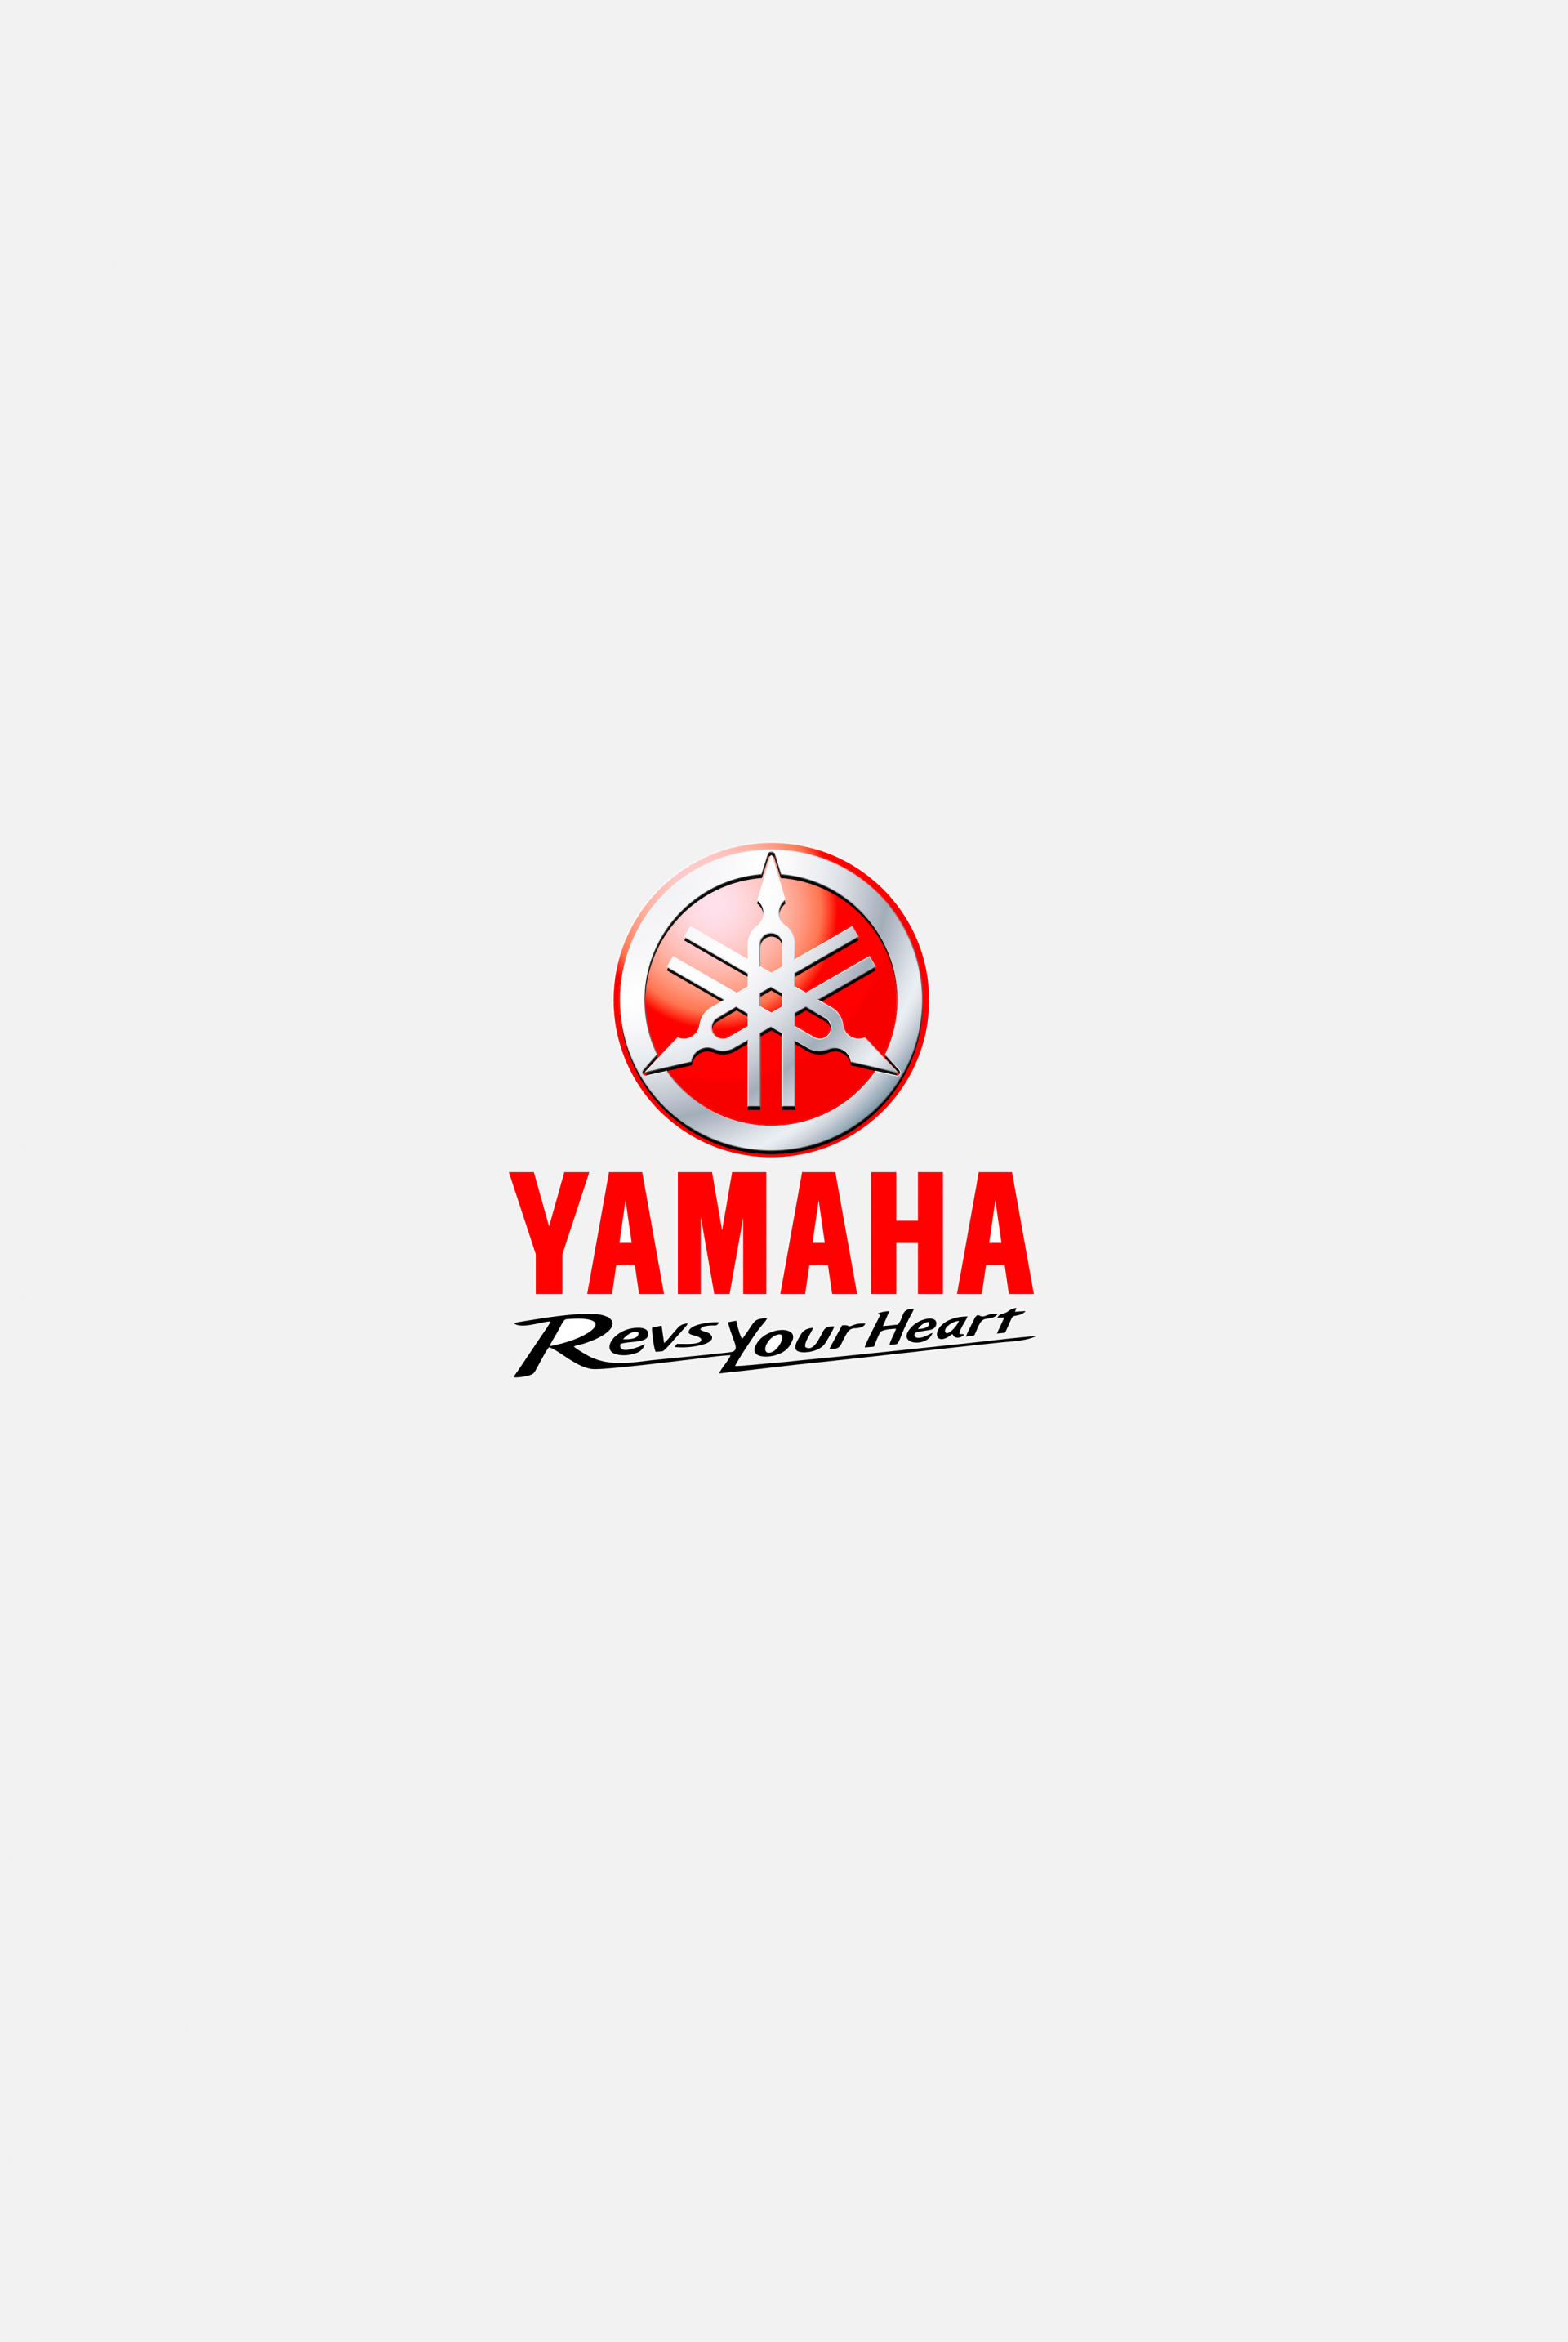 yamaha - mob